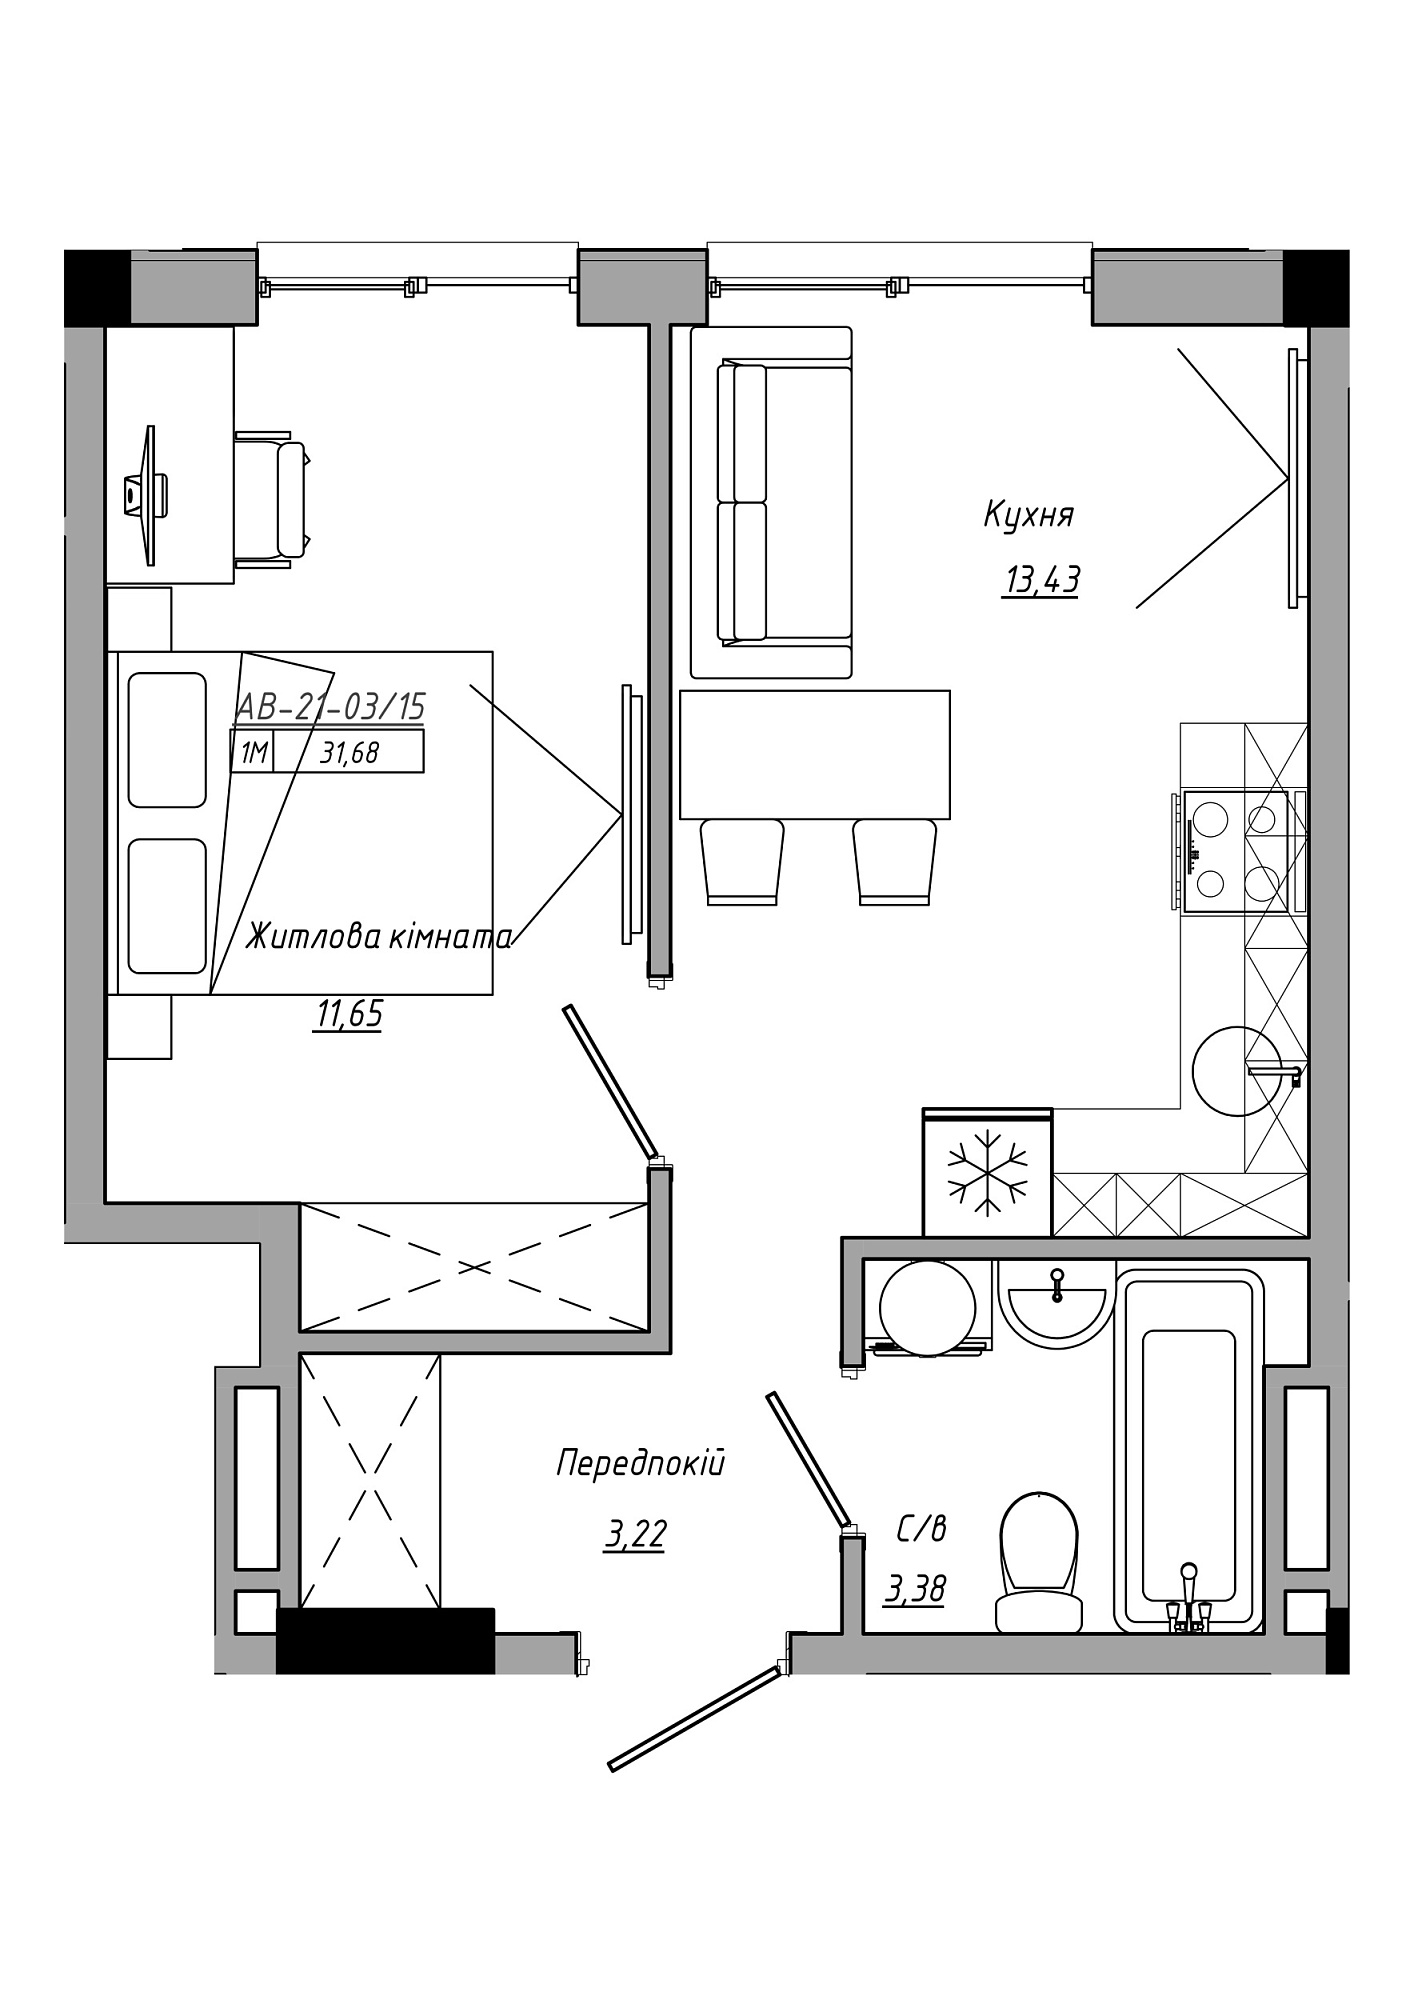 Планування 1-к квартира площею 31.68м2, AB-21-03/00015.